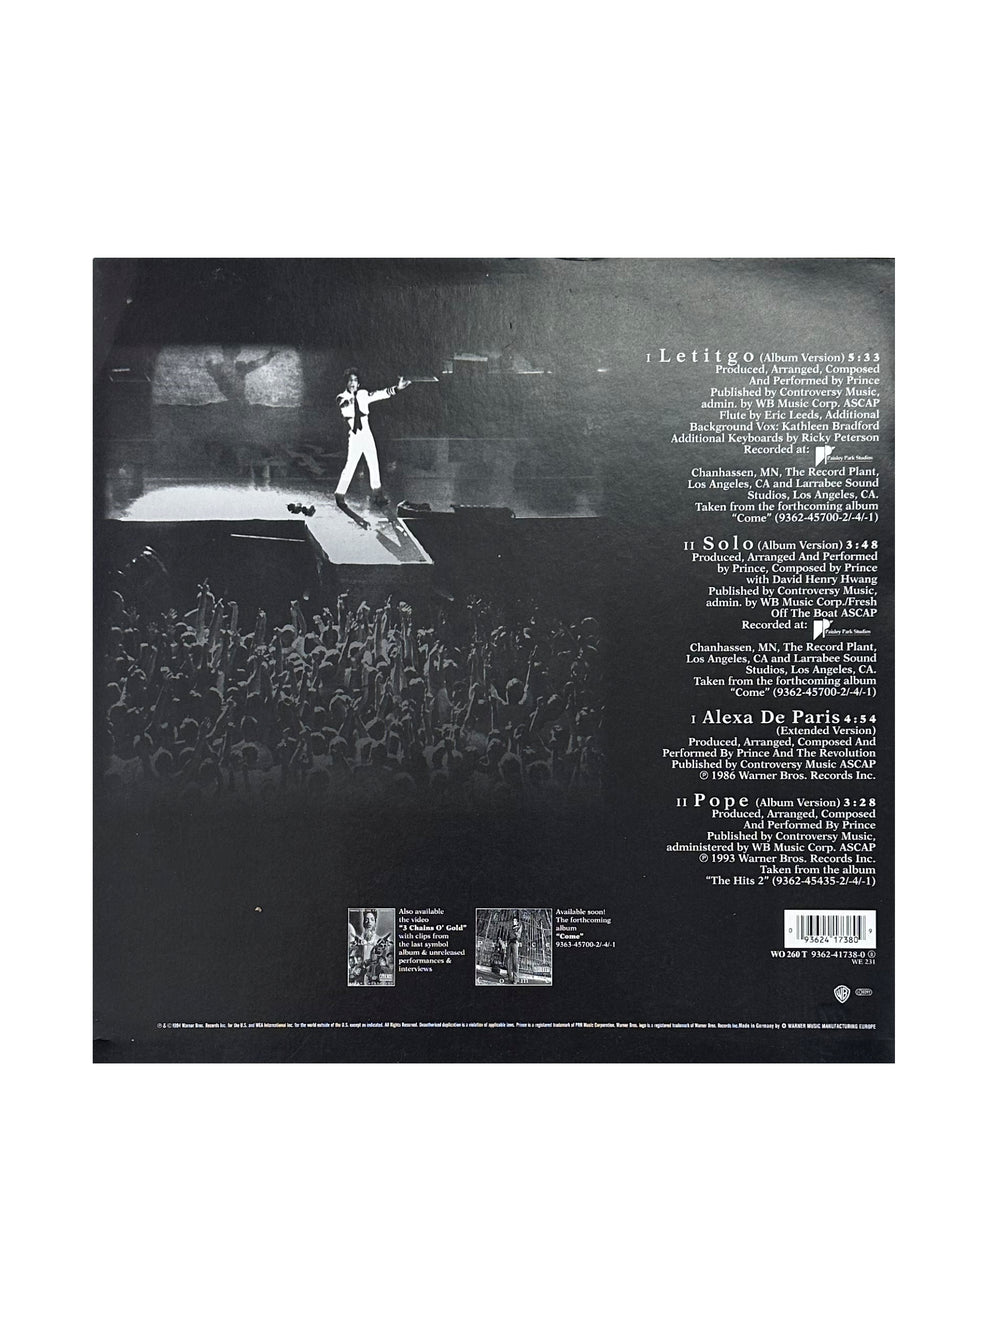 Prince – 1958 - 1993 Letitgo Vinyl 12" Single EU Preloved: 1994